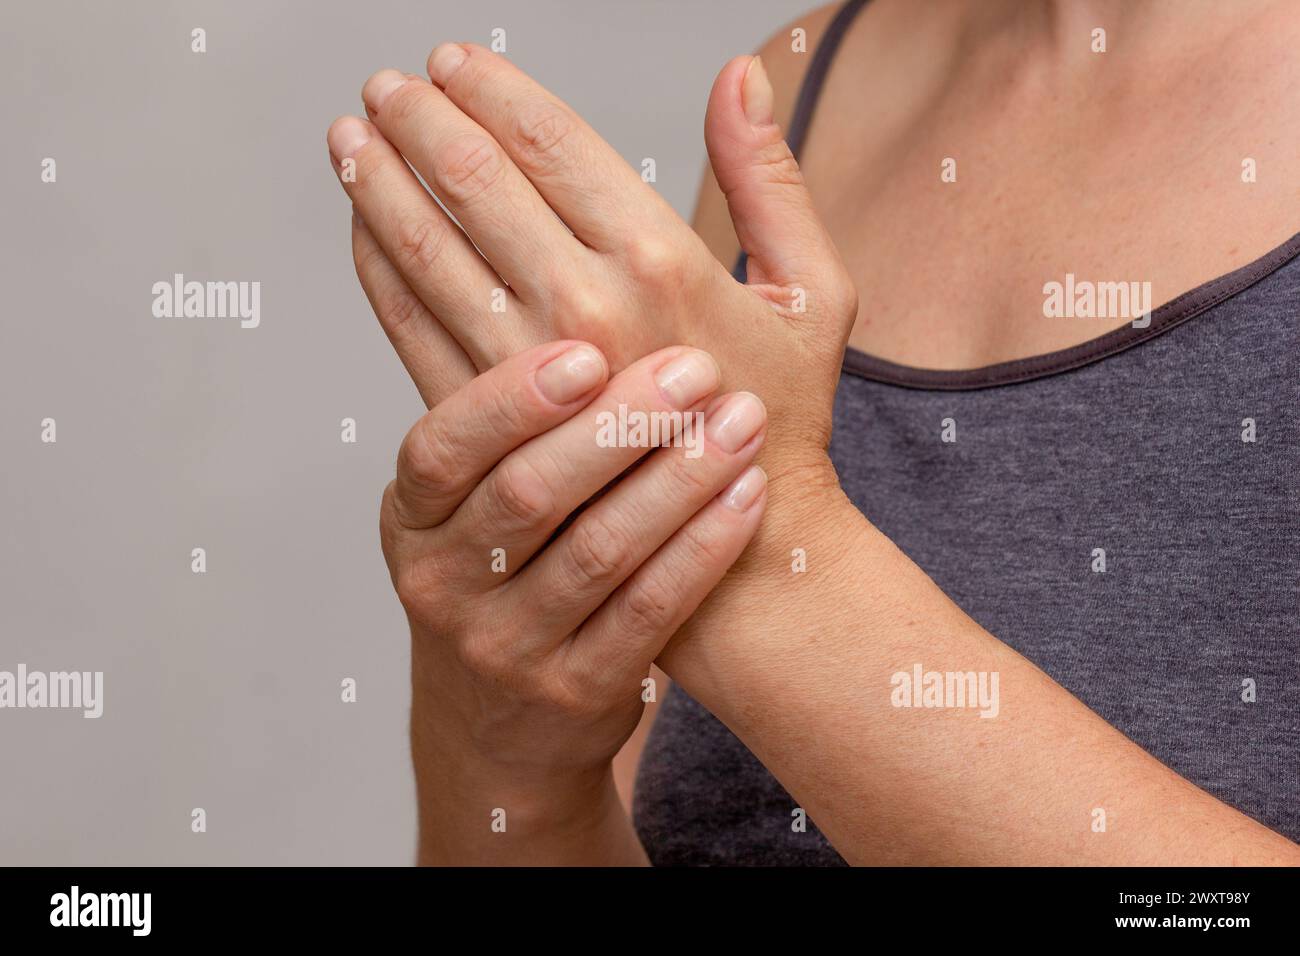 Le mani delle donne mostrano la mano intorpida Foto Stock